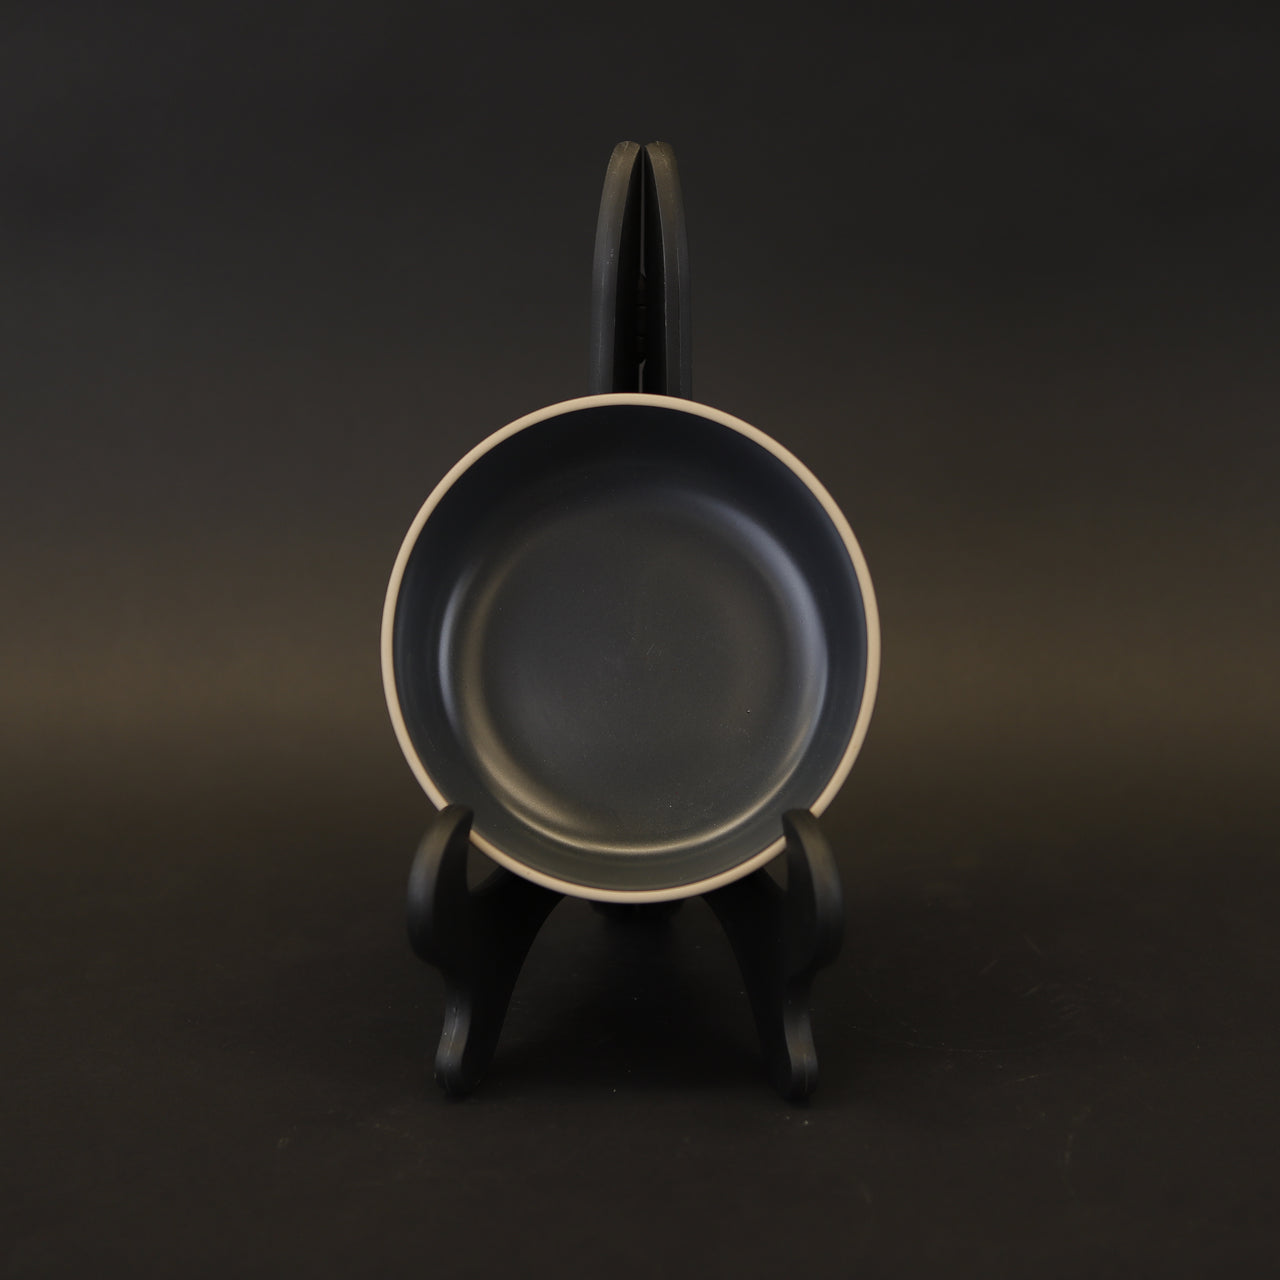 HCCH8075 - Charcoal Stone Soup Bowl